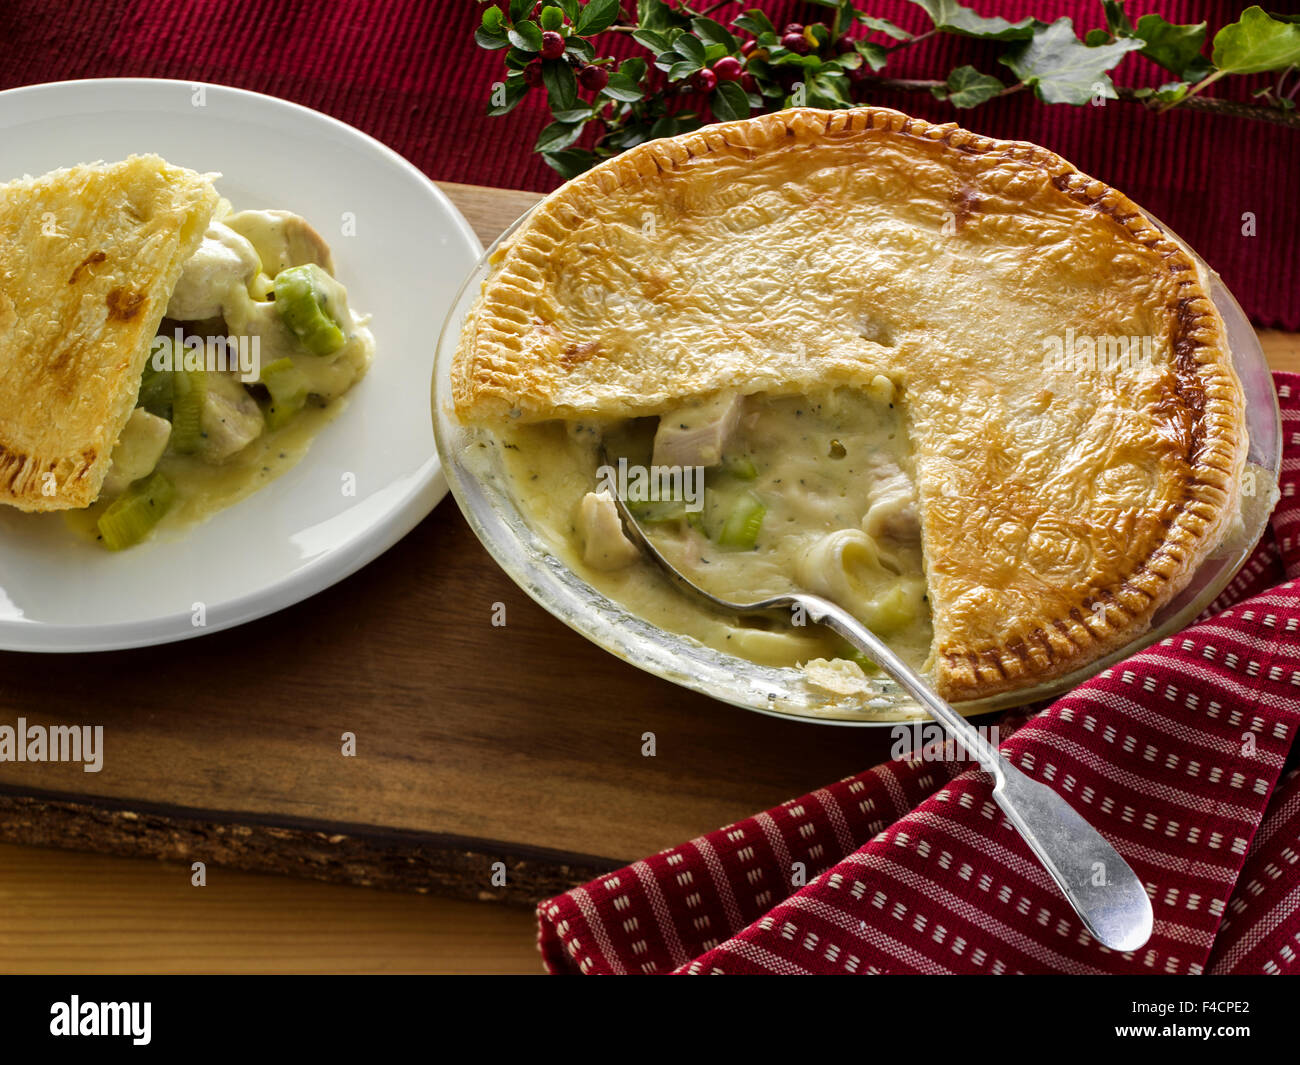 Turkey pie Stock Photo